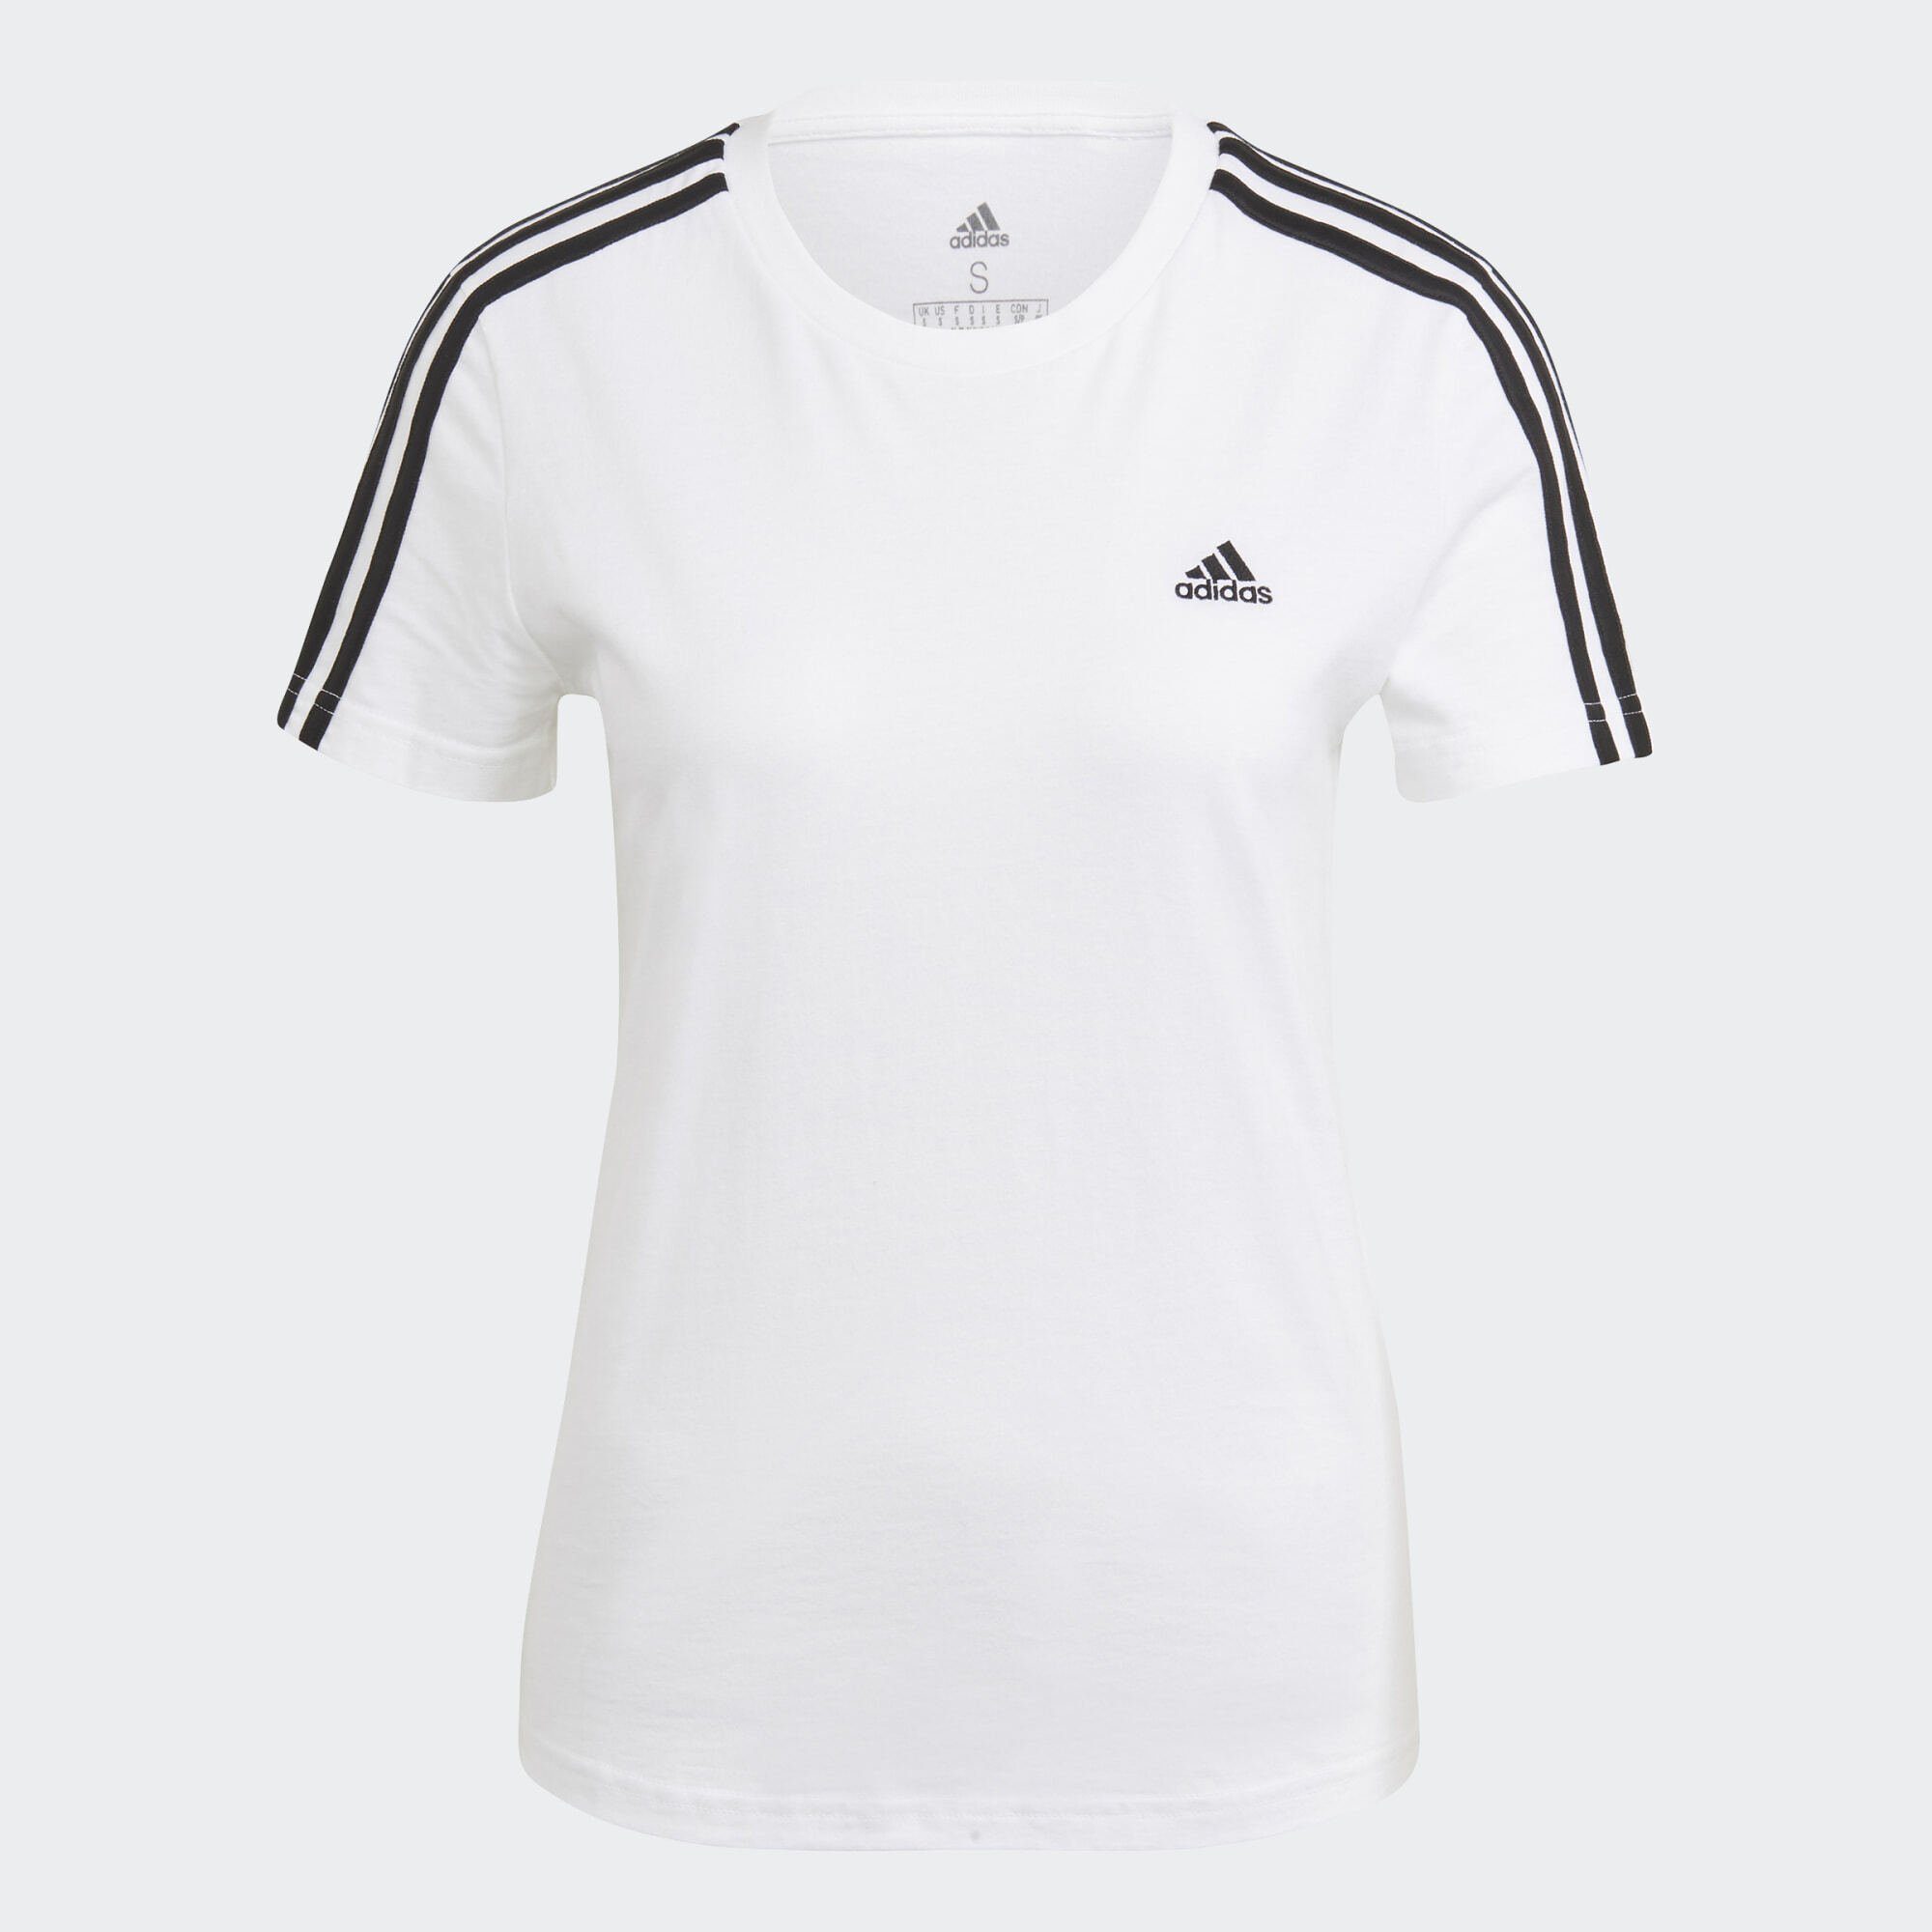 SLIM T-SHIRT / Black T-Shirt ESSENTIALS adidas White LOUNGEWEAR Sportswear 3-STREIFEN